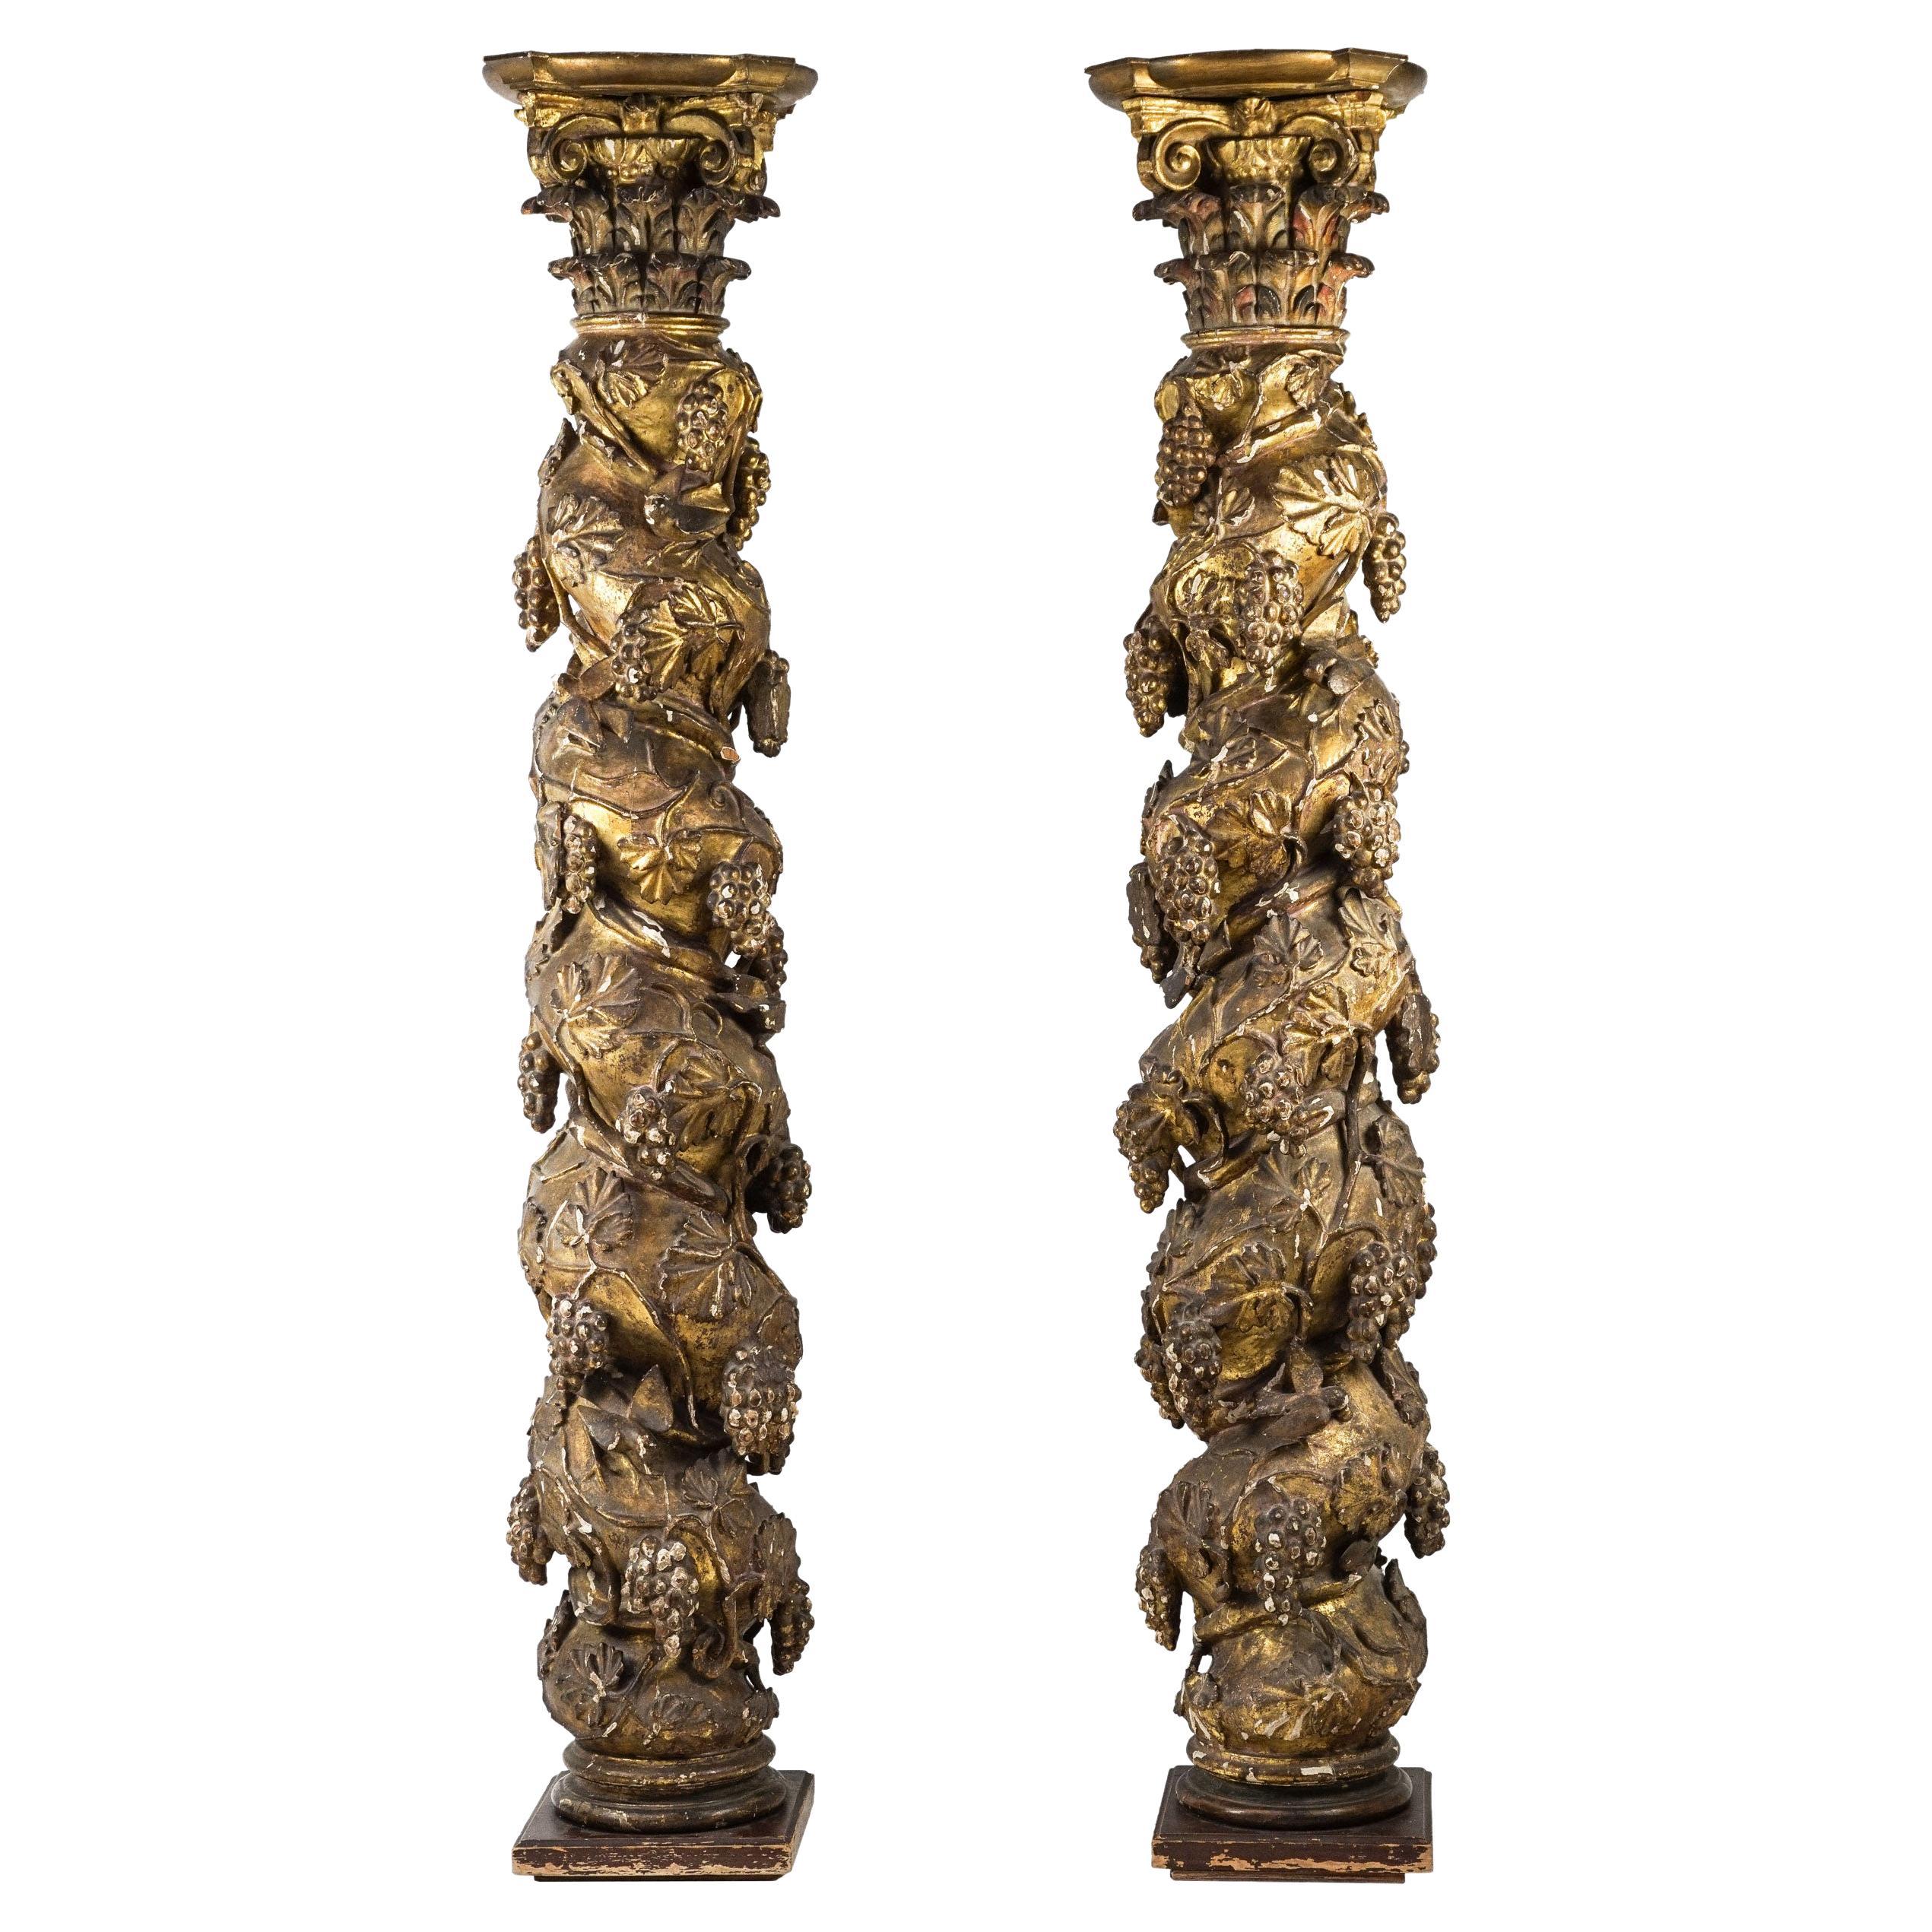 Deux colonnes baroques italiennes du 18e siècle dorées de style Solomonic avec chapiteaux corinthiens